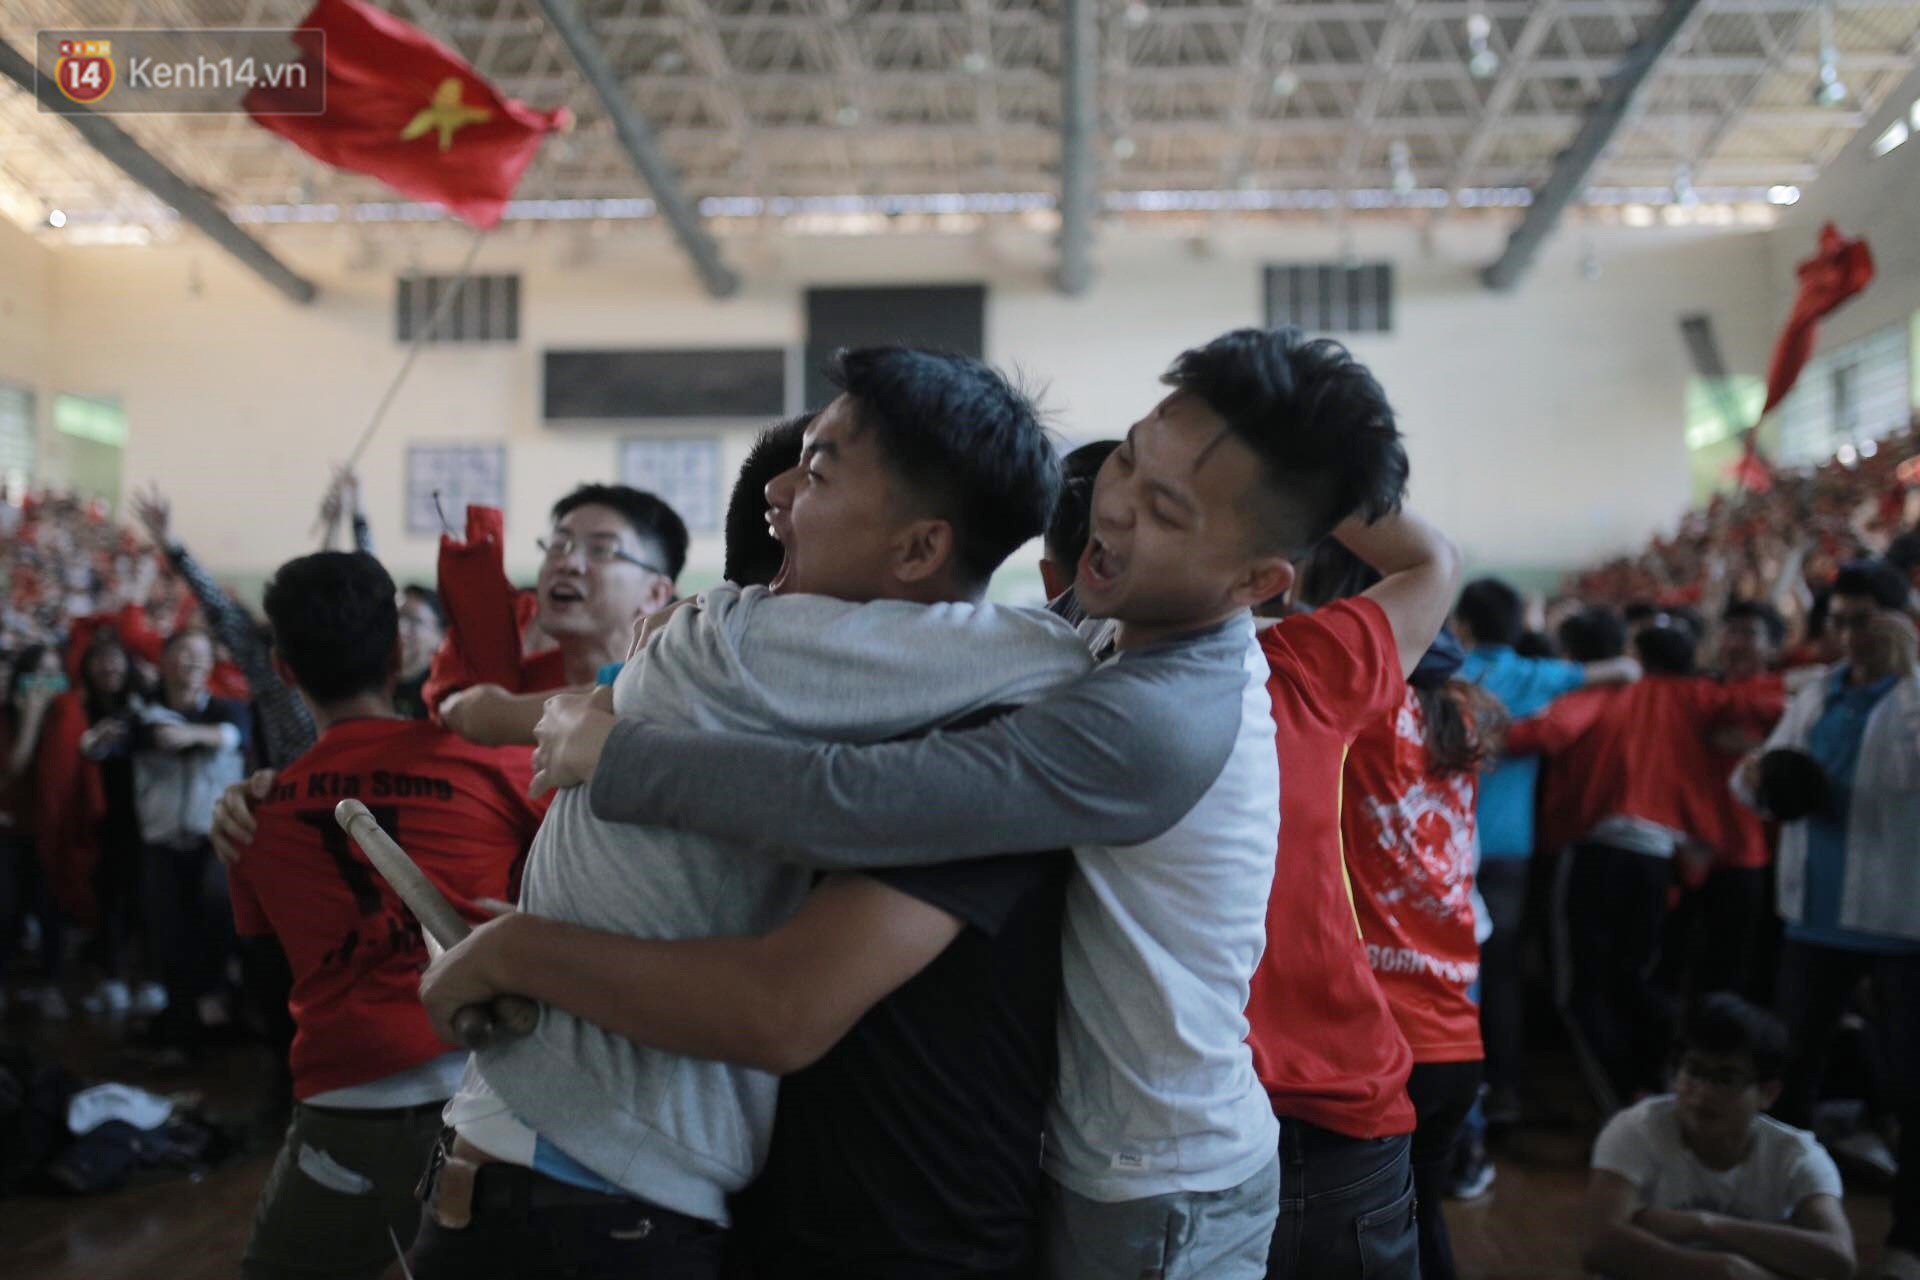 Chùm ảnh: Khoảnh khắc U23 Việt Nam gỡ hòa trong những phút cuối, hàng triệu người đã nắm tay, ôm nhau hạnh phúc nhường này - Ảnh 6.